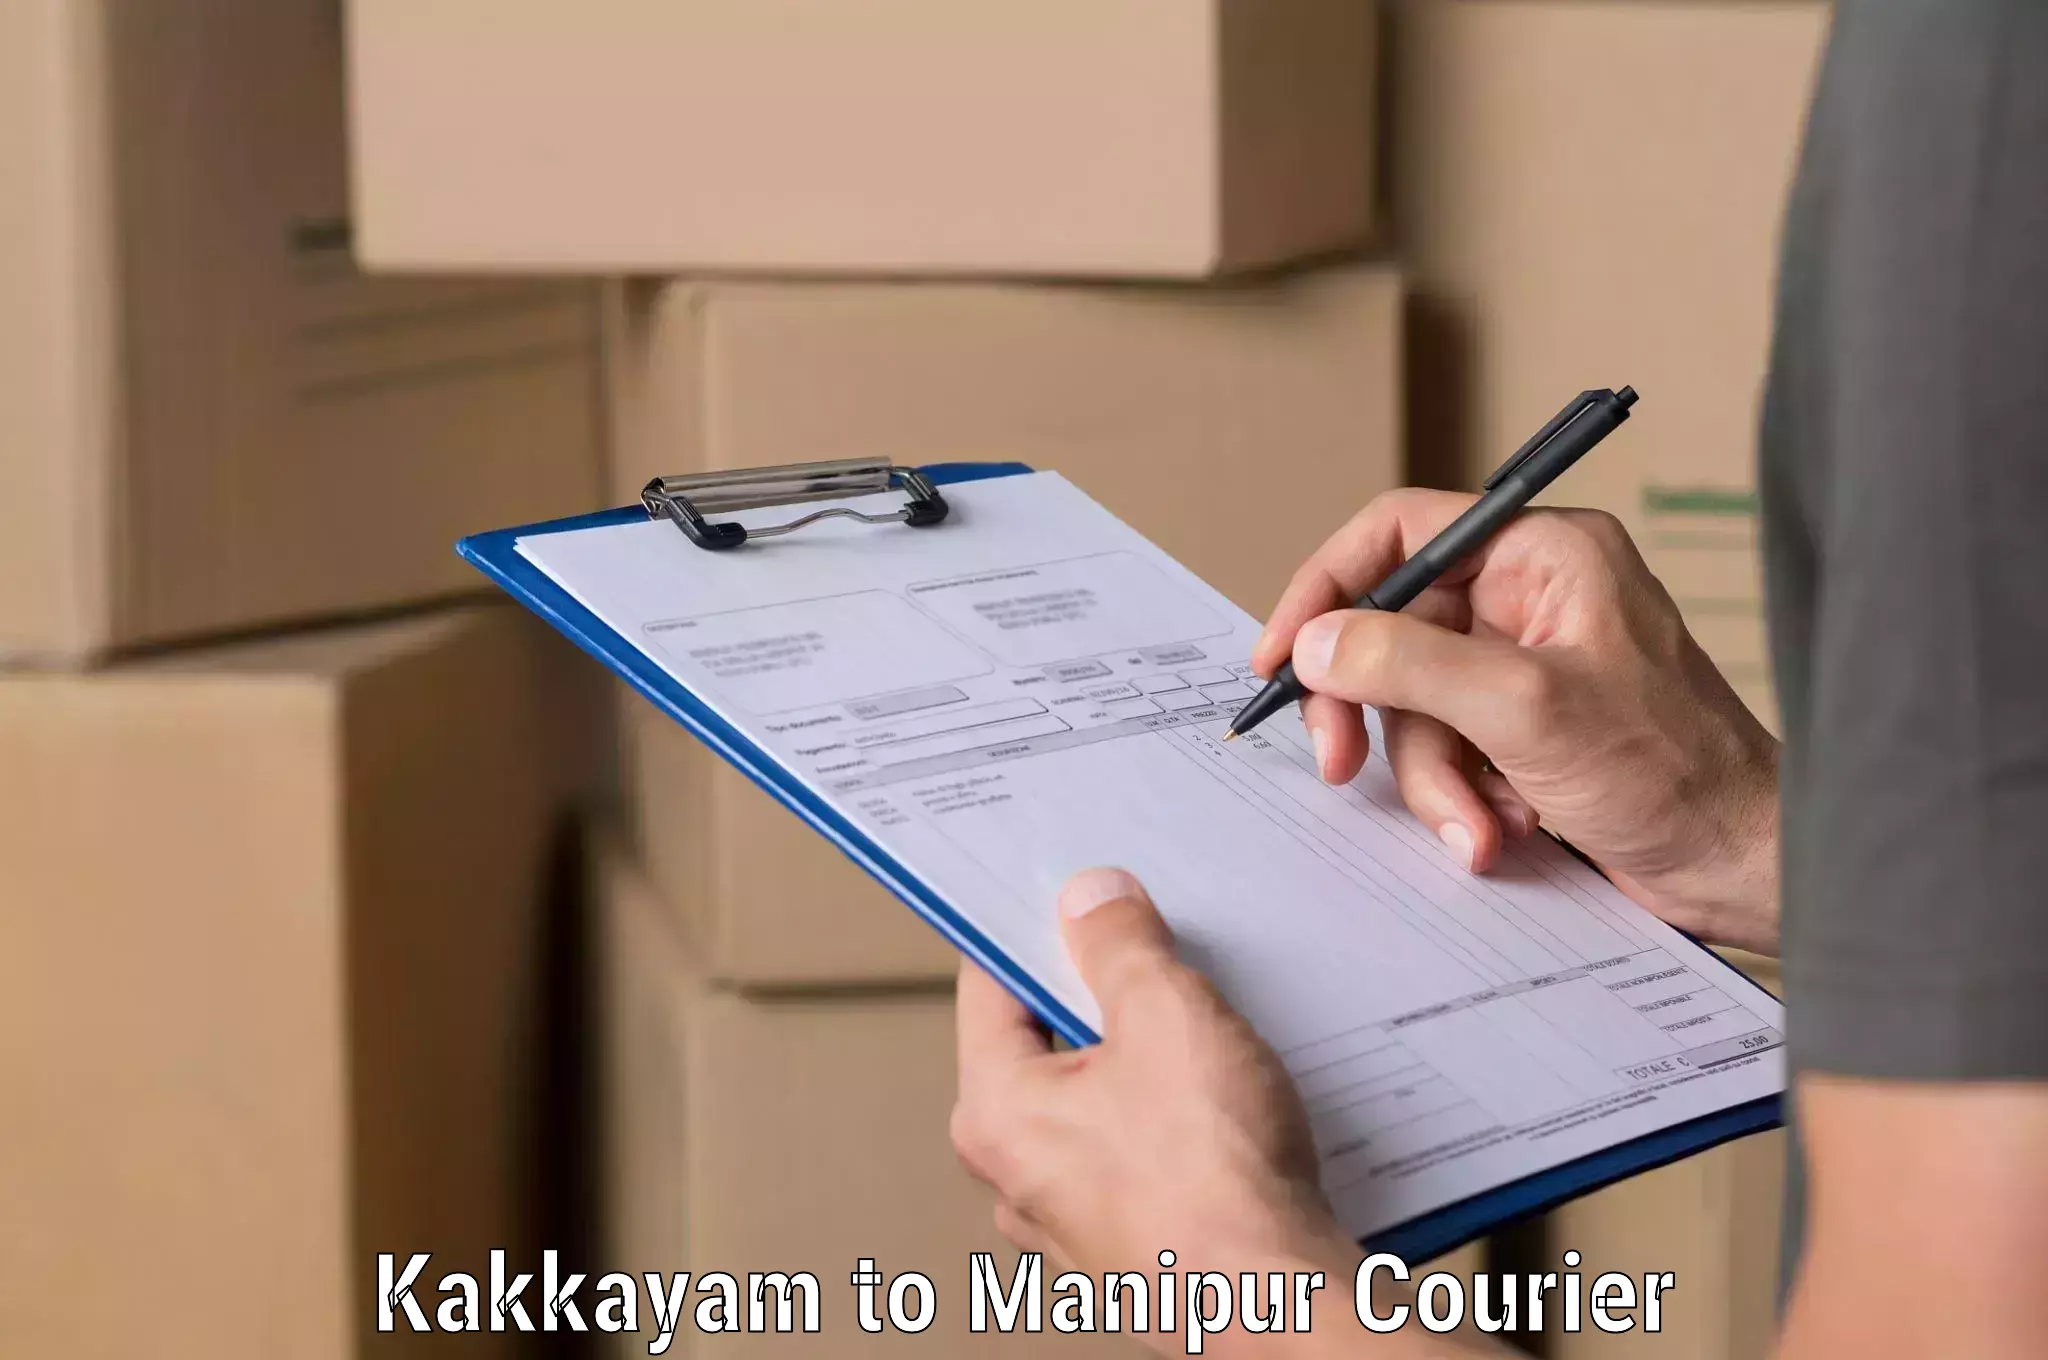 User-friendly courier app Kakkayam to Moirang